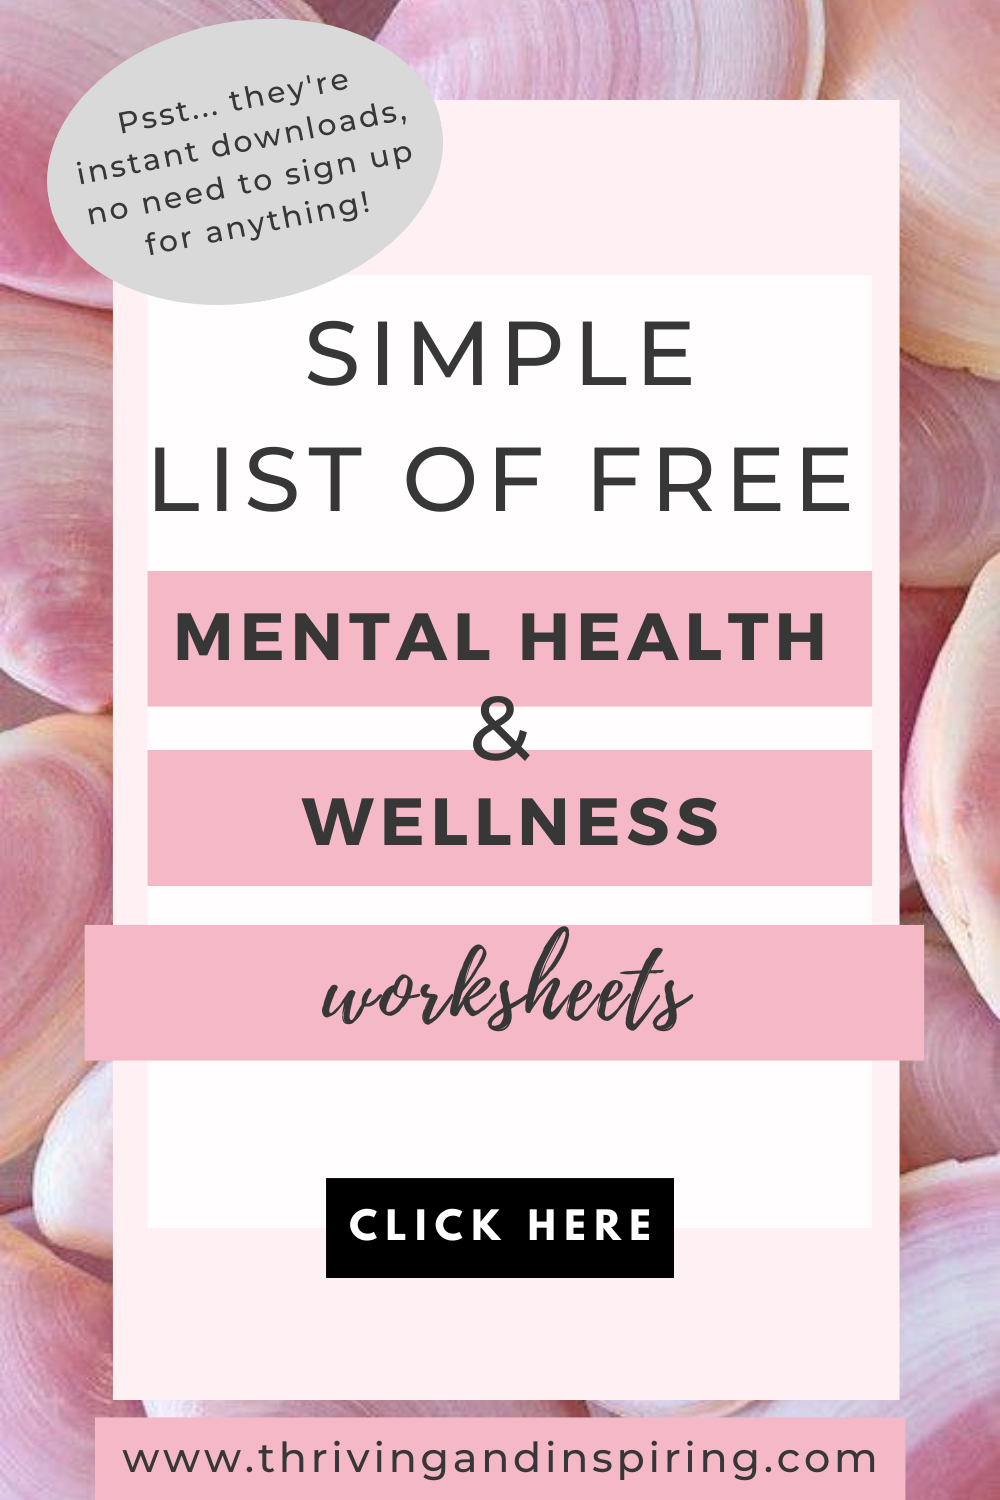 100+ Wellbeing Self-Care Worksheets Bundle. – mentalwellnesslibrary